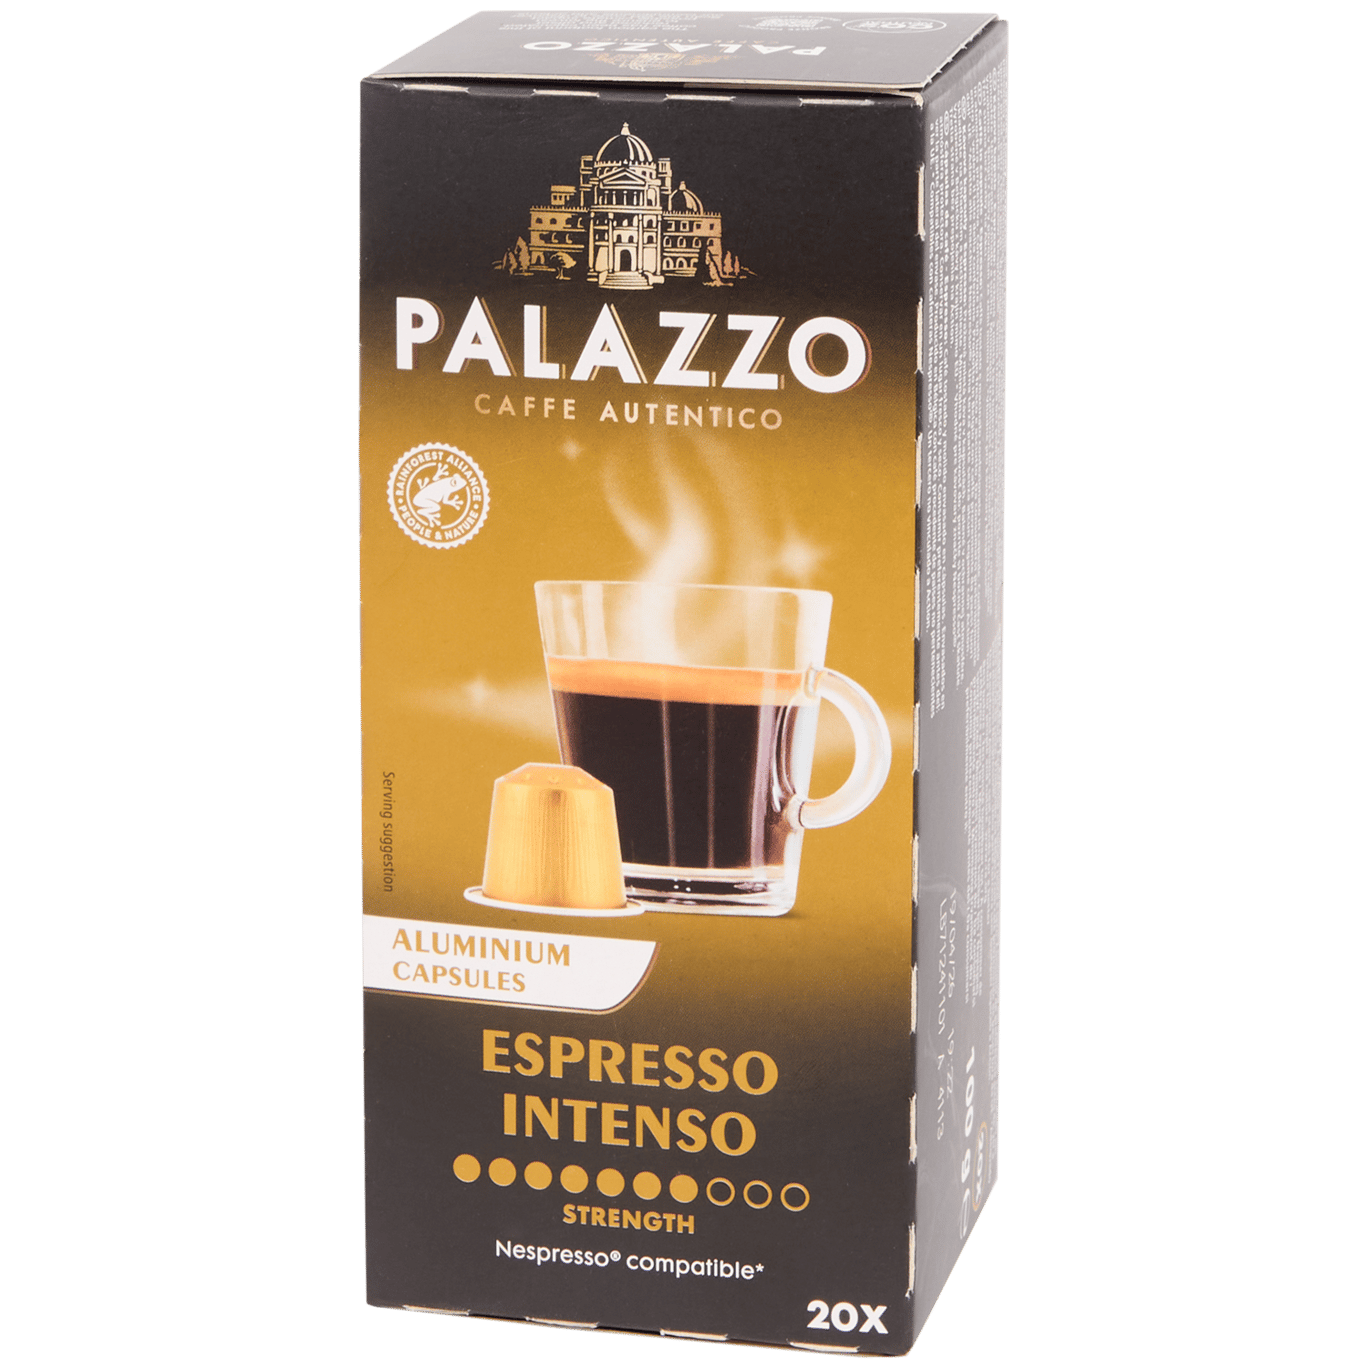 Capsules de café Palazzo Espresso Intenso